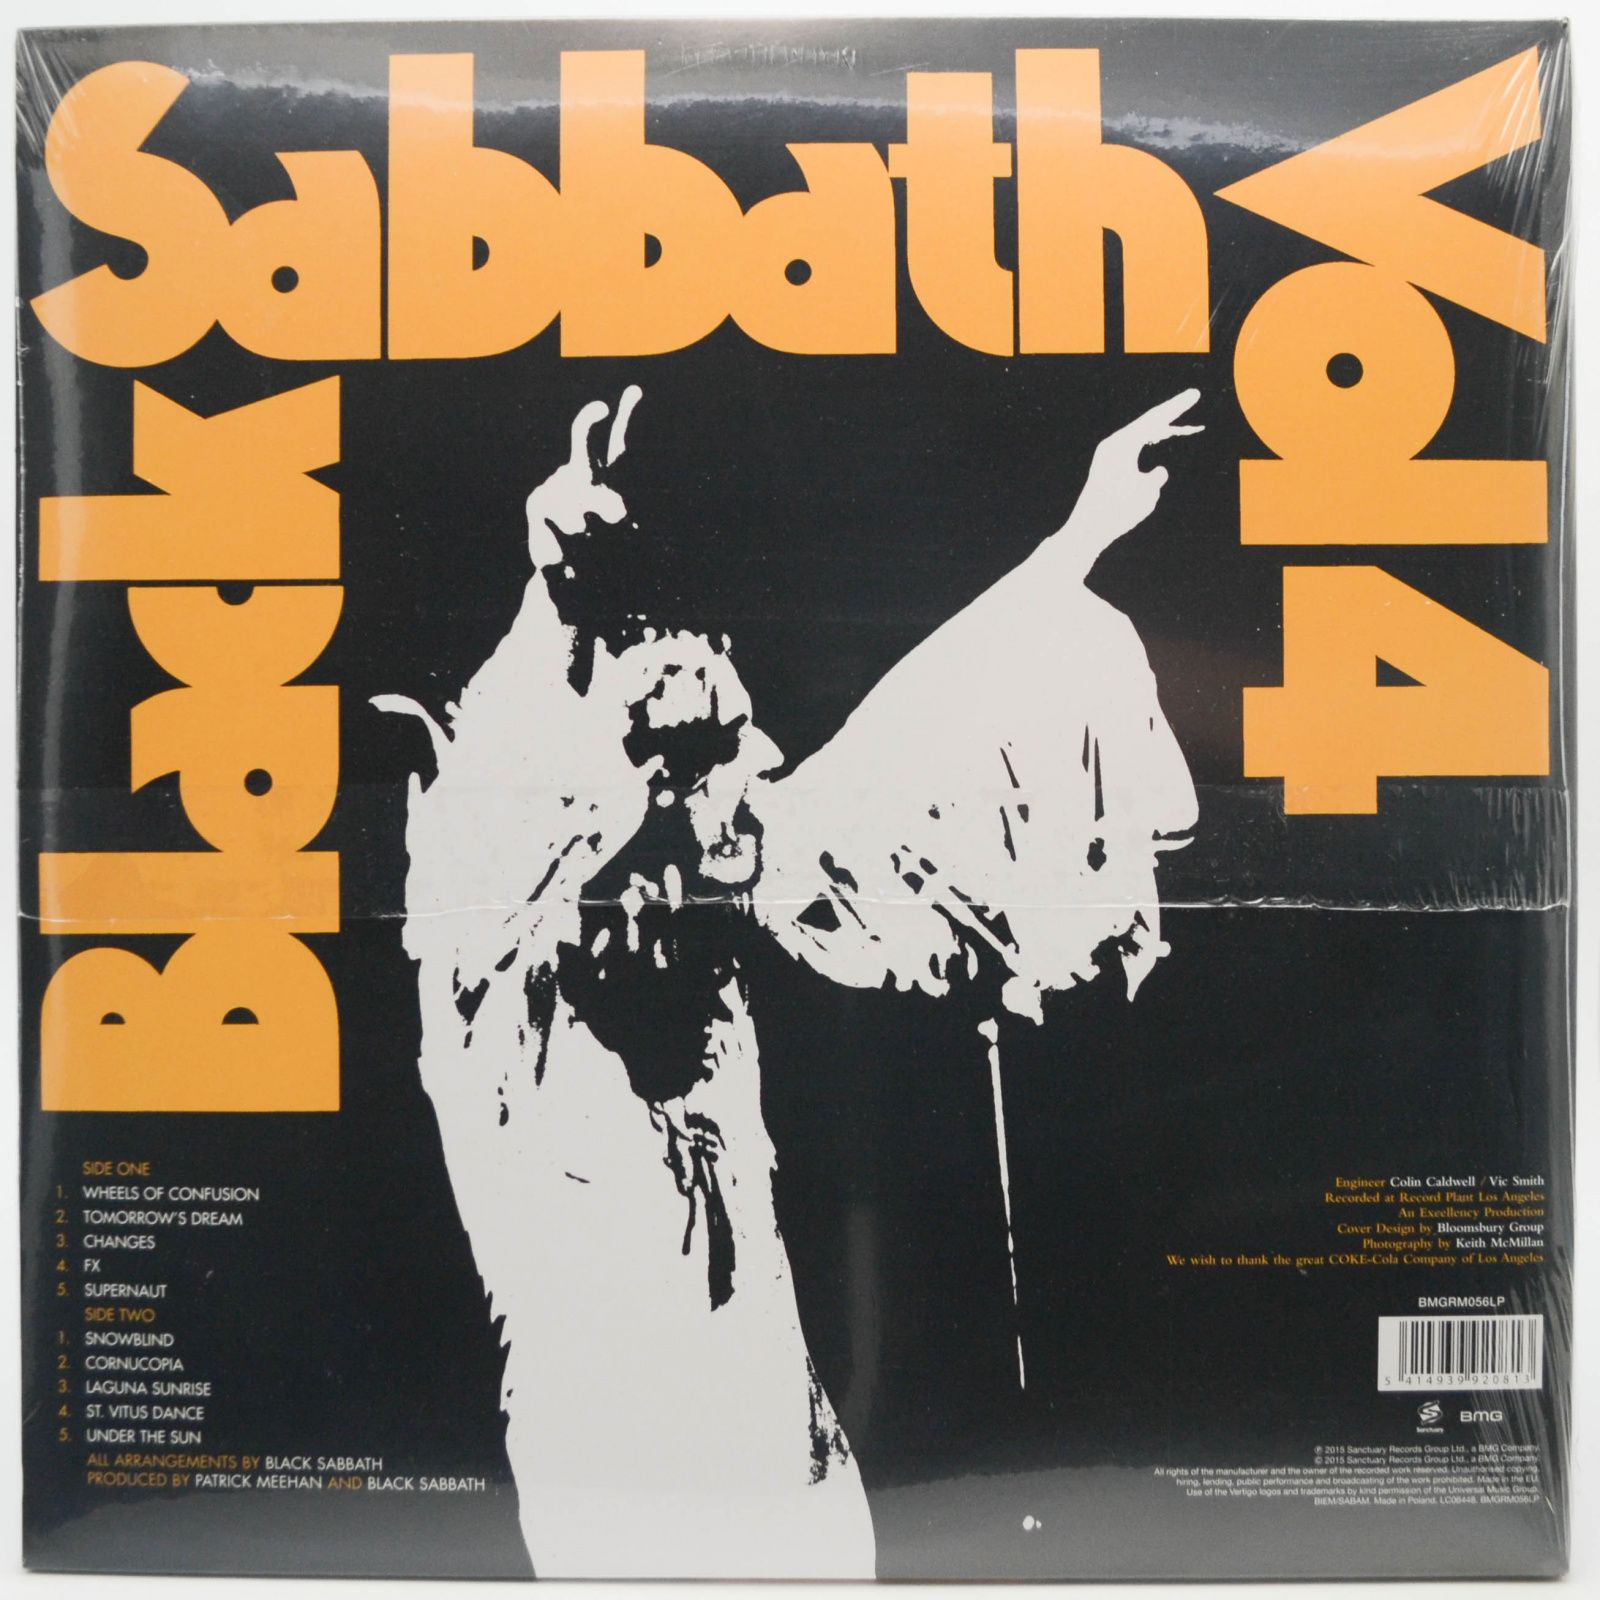 Black Sabbath — Black Sabbath Vol. 4, 1972